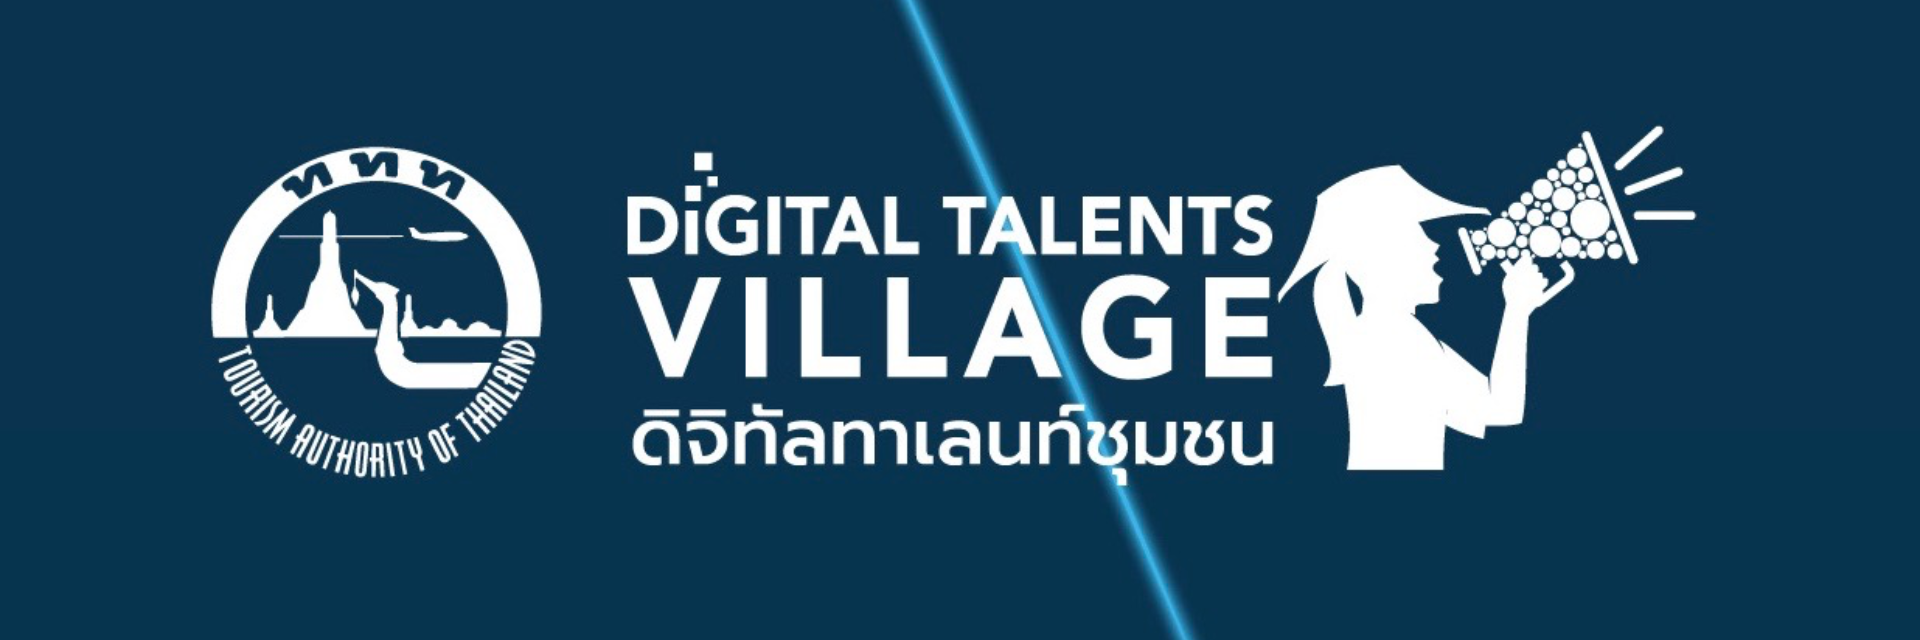 ททท. เปิดคอร์สดิจิทัลมาร์เกตติ้งให้คนรุ่นใหม่ใน 42 ชุมชน (Digital Talents Village)